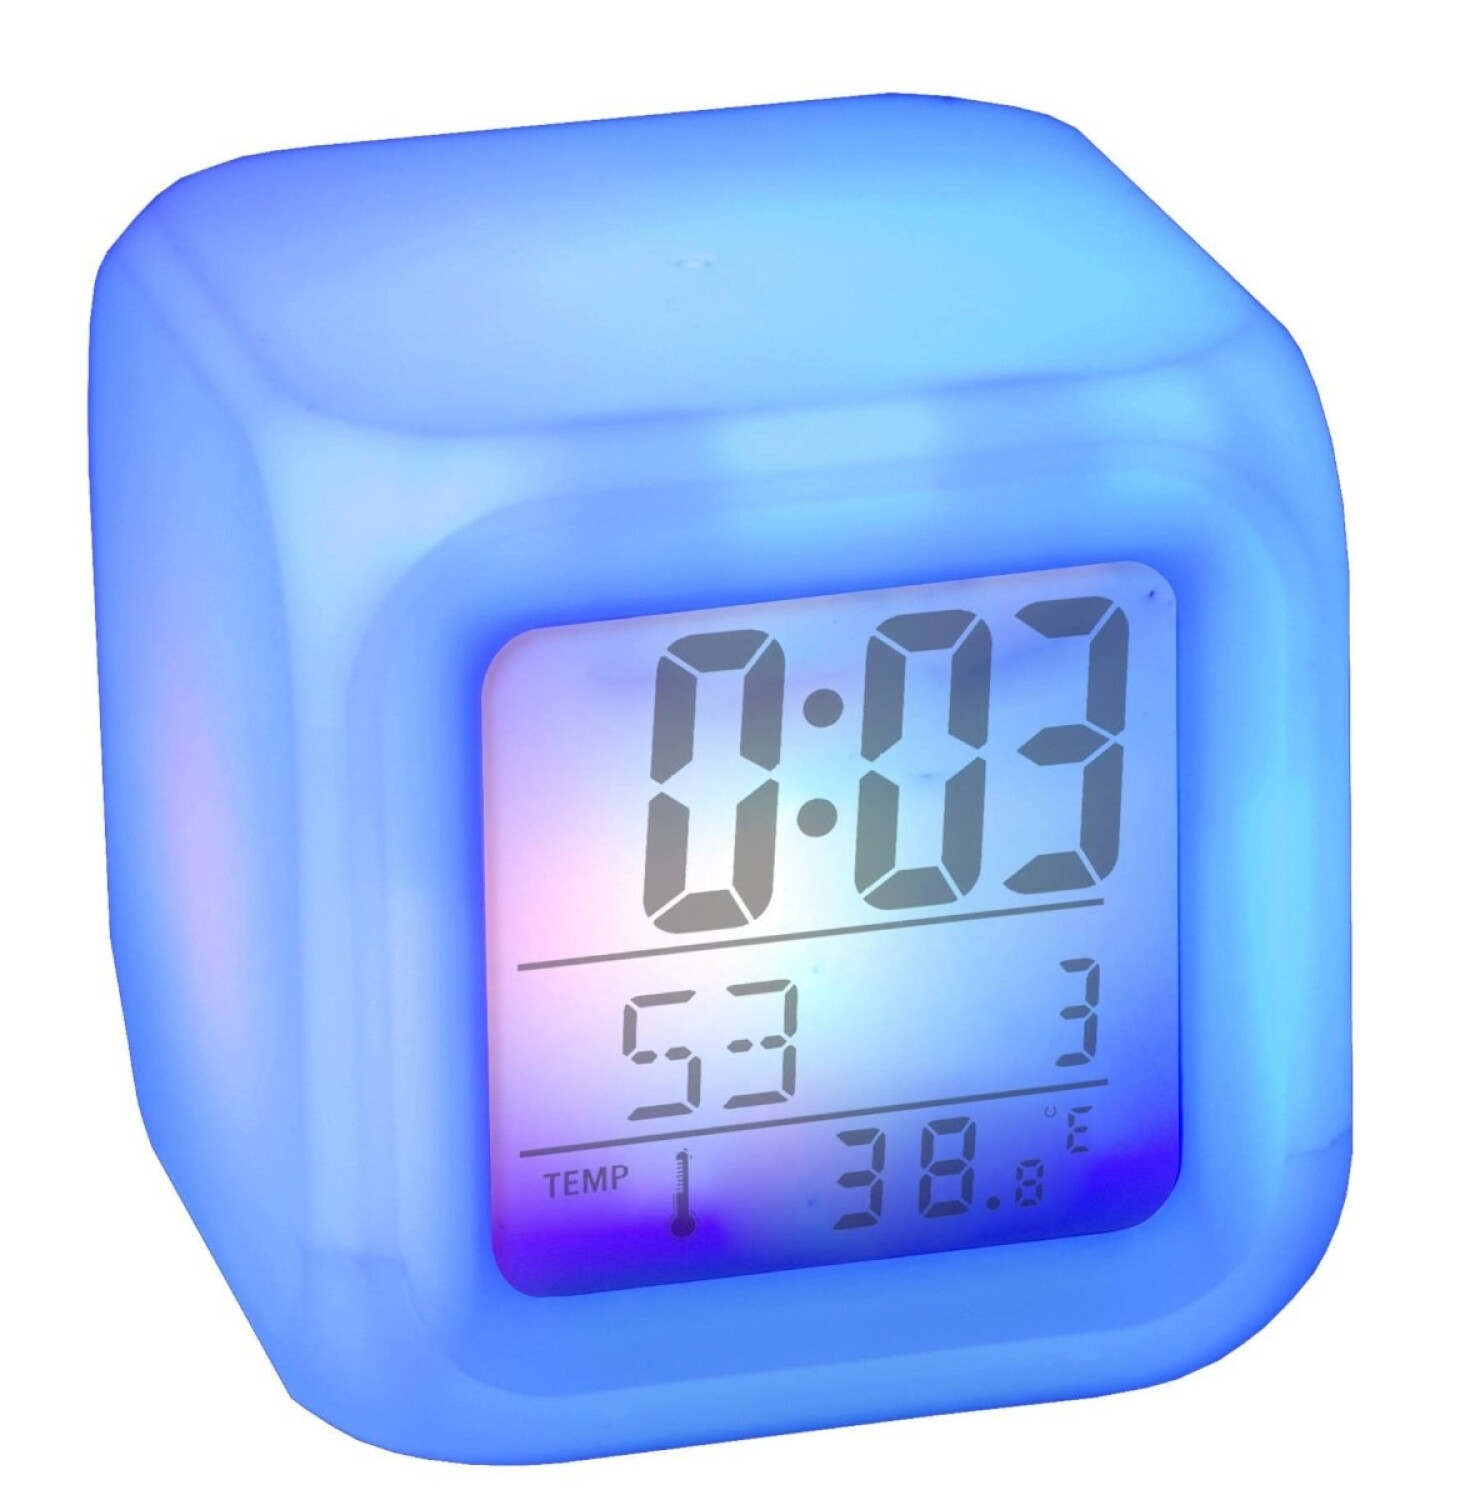 LetiziaMx - Reloj Despertador Luz De Colores ( Alarma, Calendario, Temp)  Reloj despertador con luces de colores. Calendario que muestra  dia,mes,hora. Termómetro. Luces de colores. Alarma. Consigue este articulo  y muchos más